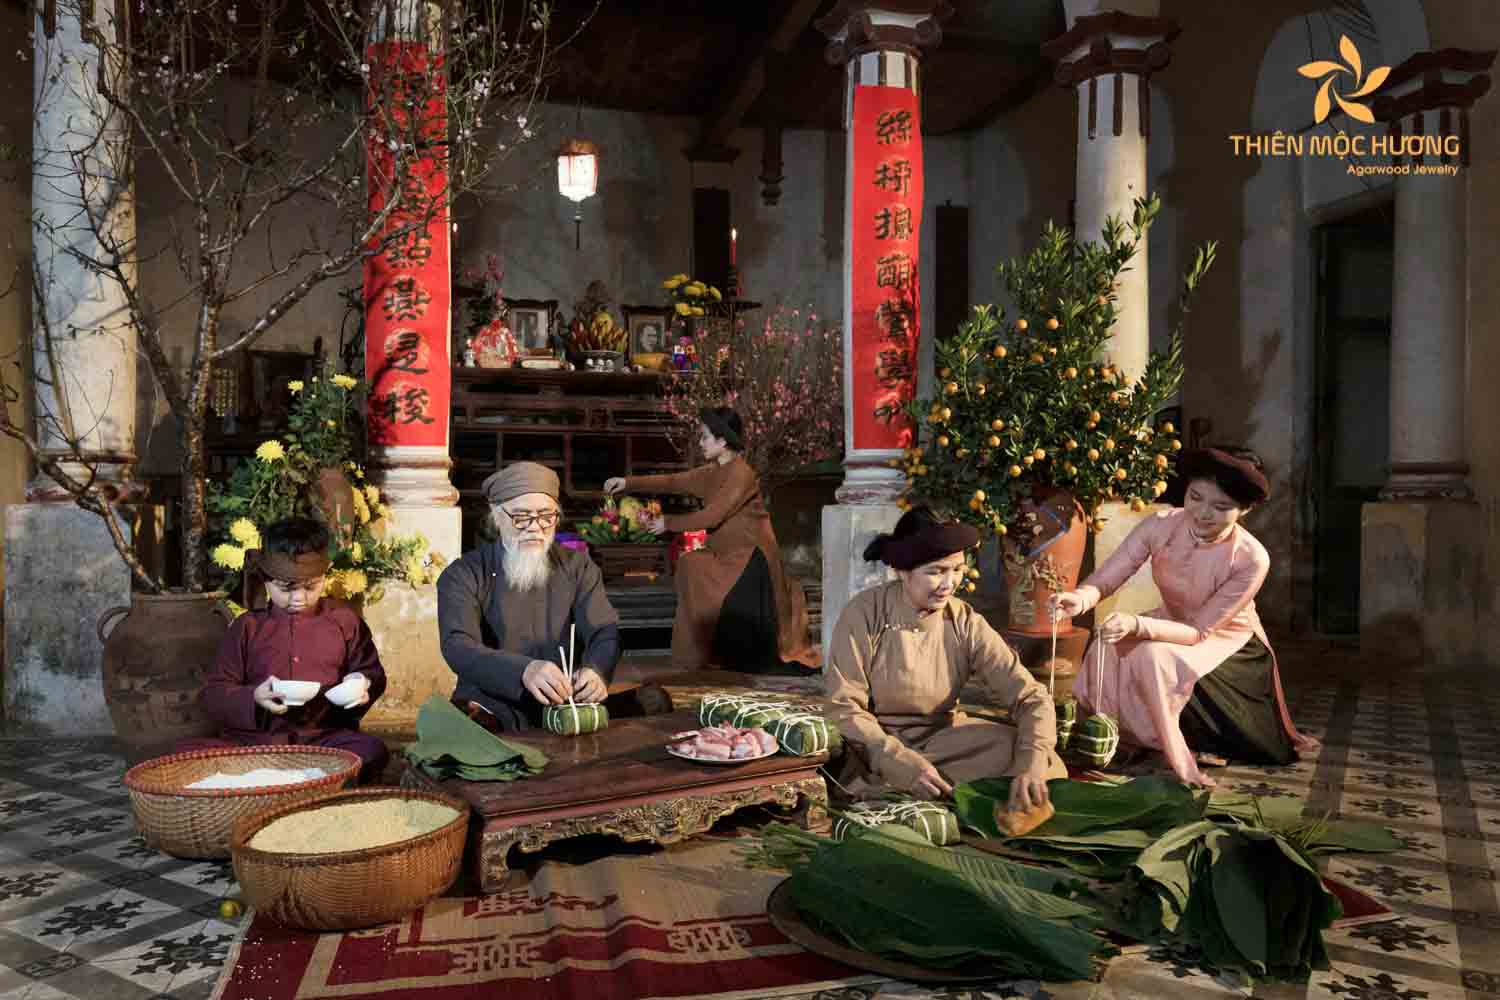 Vietnamese Lunar New Year wishes